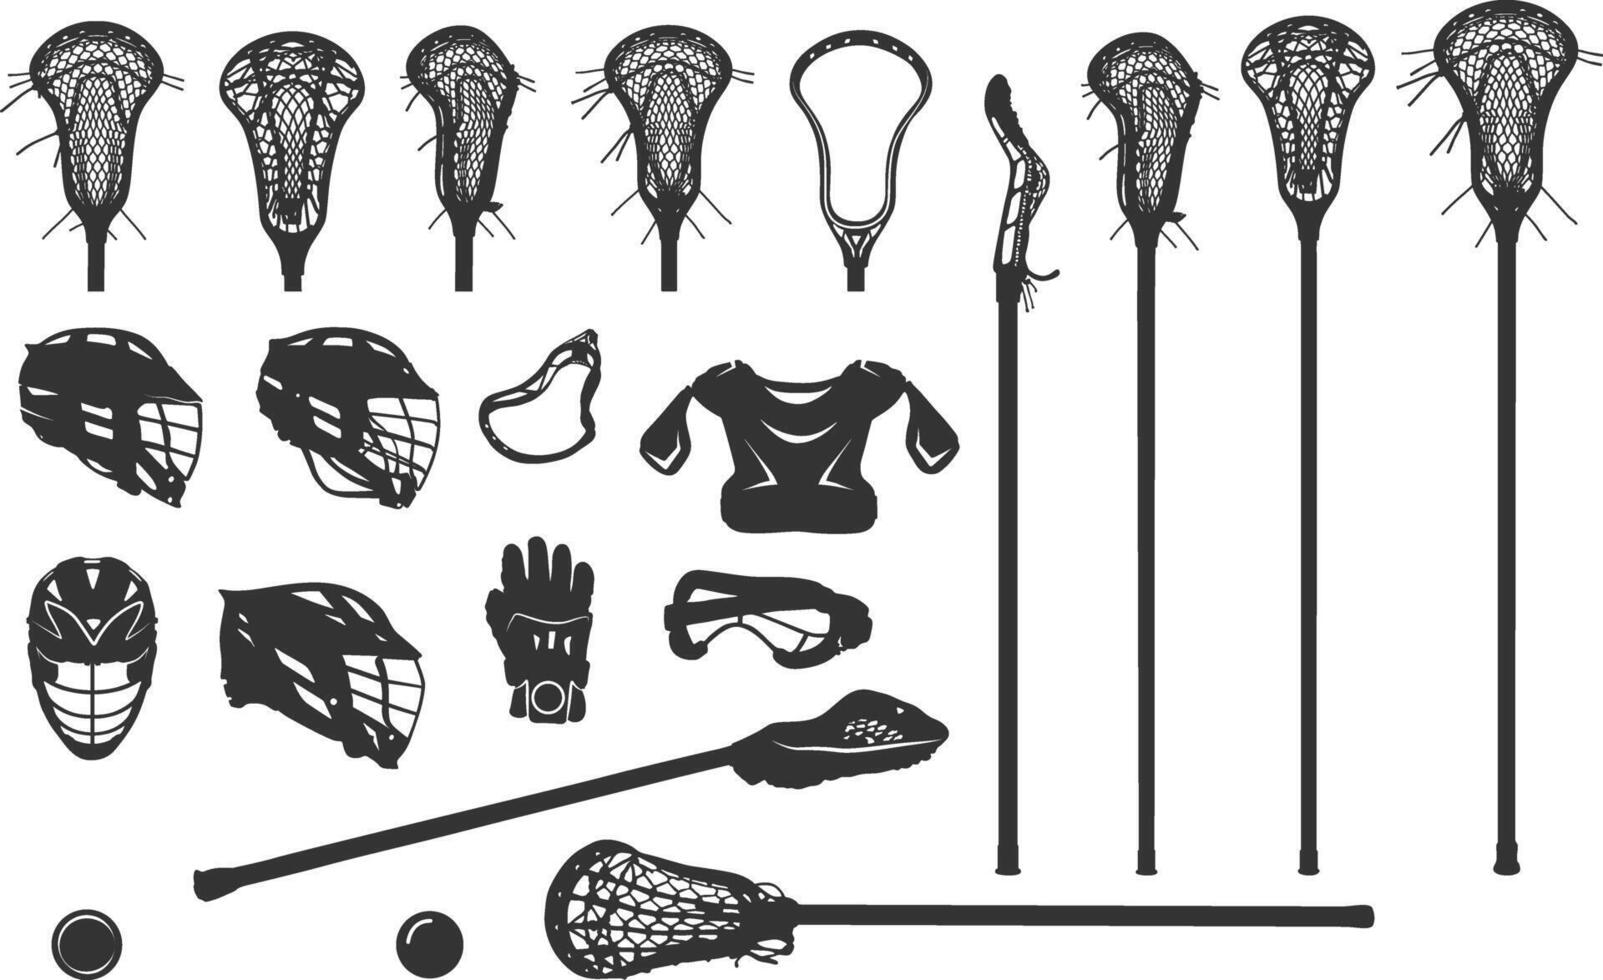 lacrosse silhouettes, lacrosse des bâtons et casque silhouette, lacrosse paquet silhouettes, lacrosse bâton silhouettes, lacrosse casque silhouette, lacrosse bâton vecteur illustration.